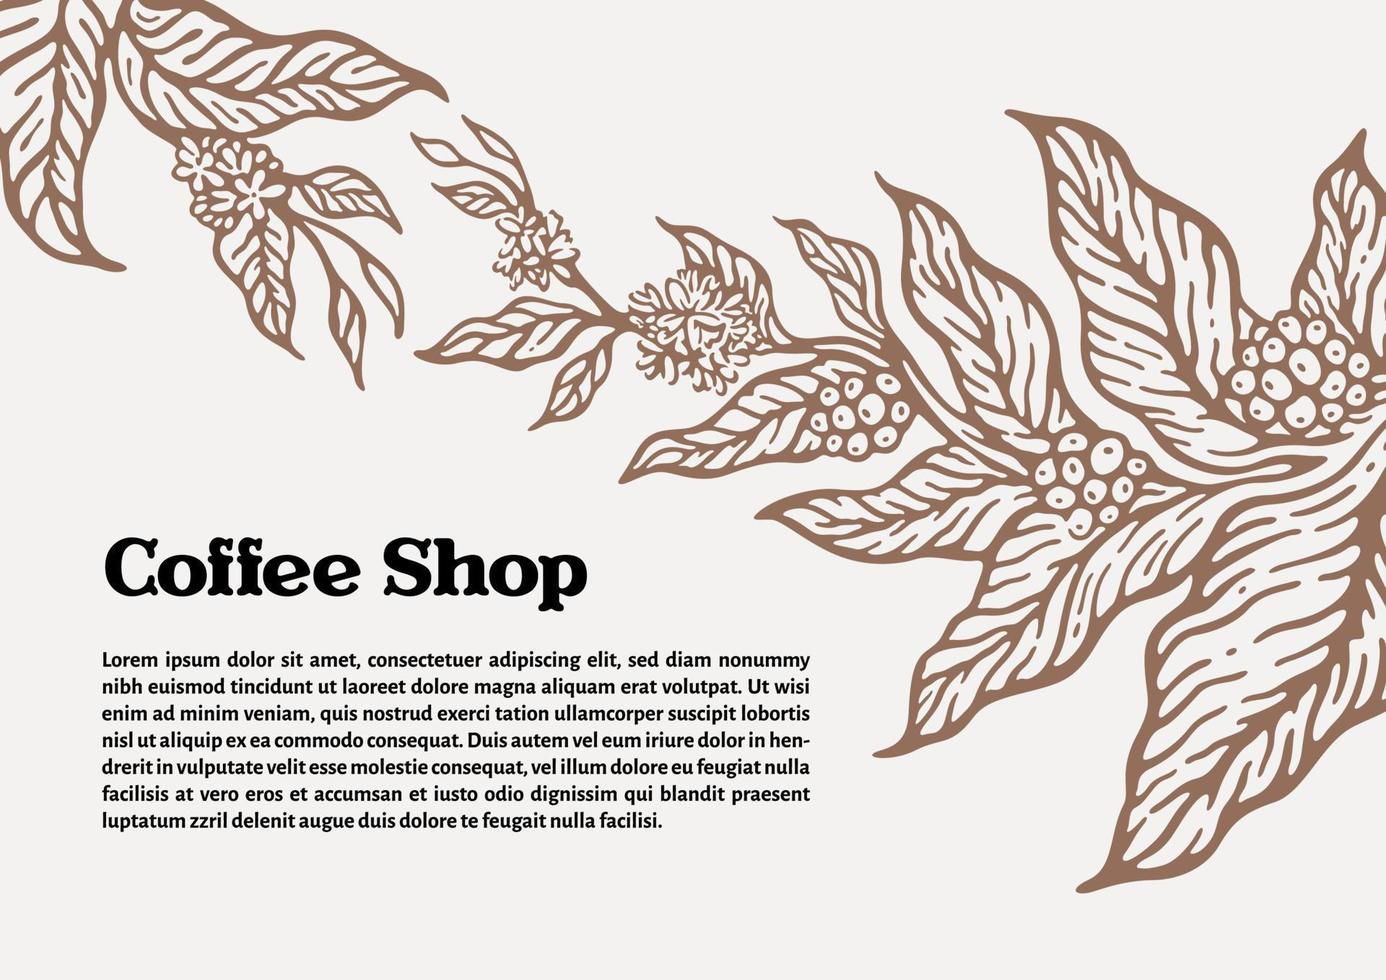 modelo de galho de árvore de café com folhas e grãos de café naturais. ilustração botânica. vetor